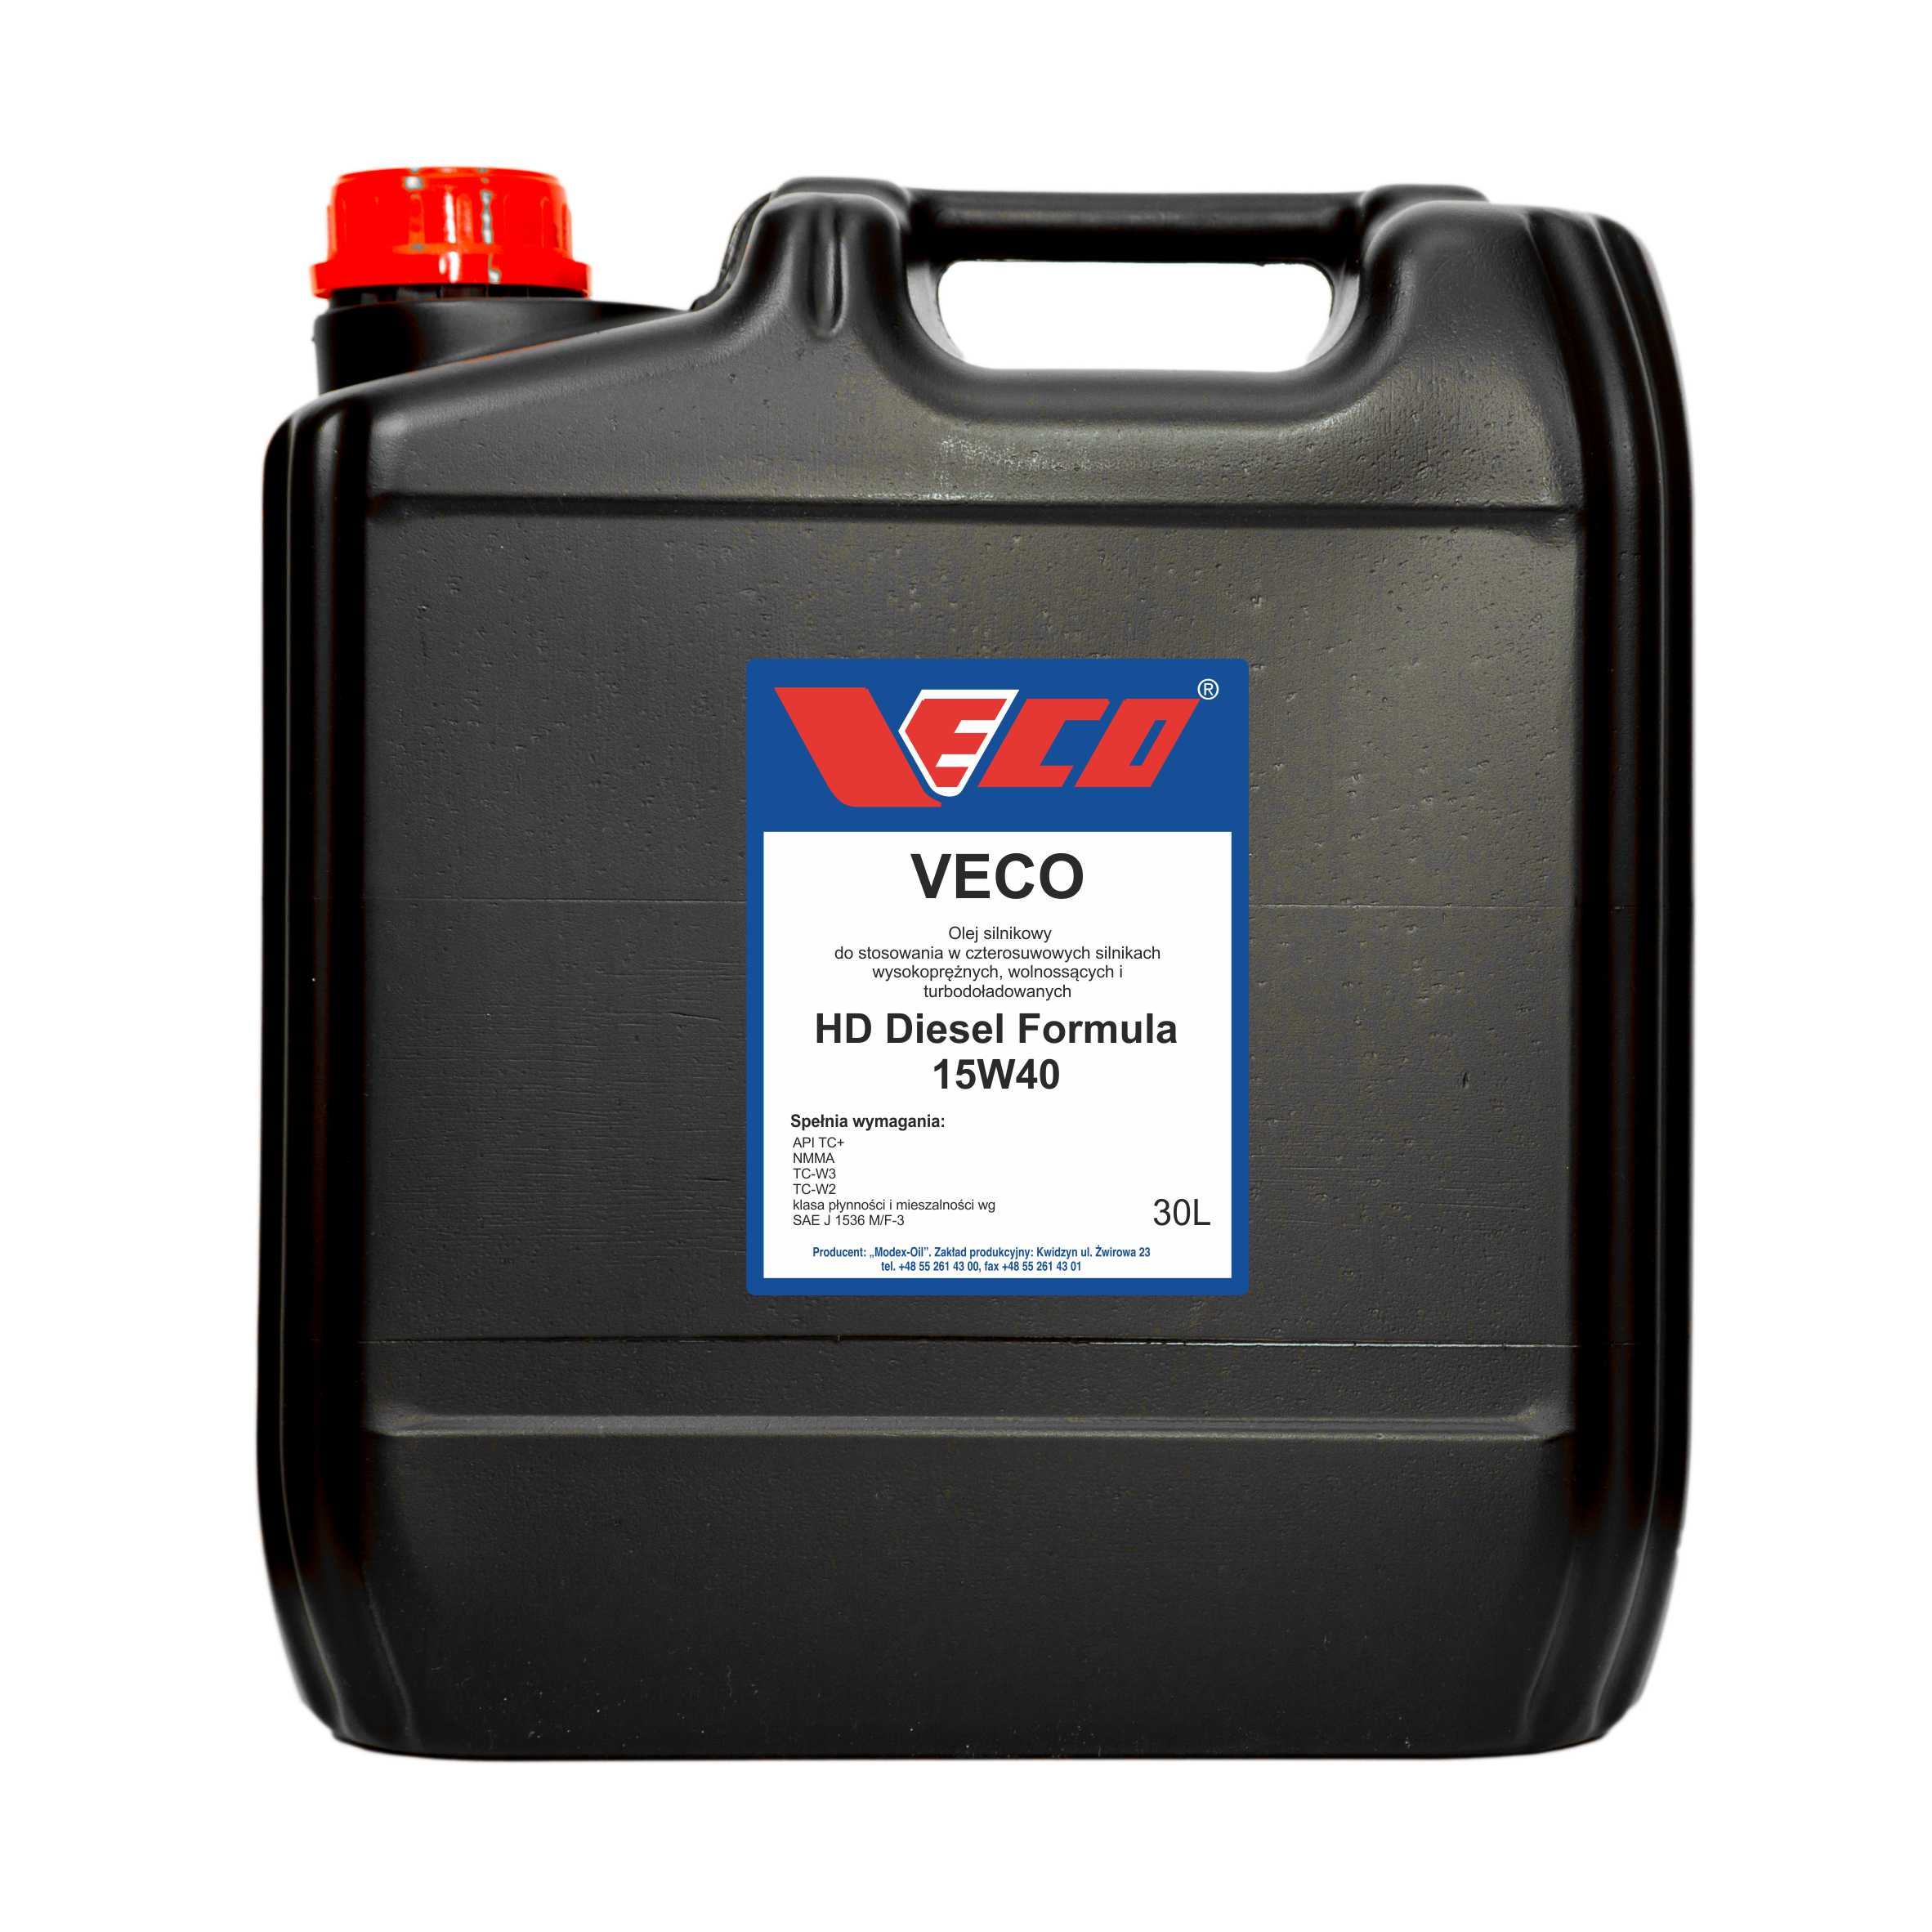 VECO HD Diesel Formula 15W40 opak 30L